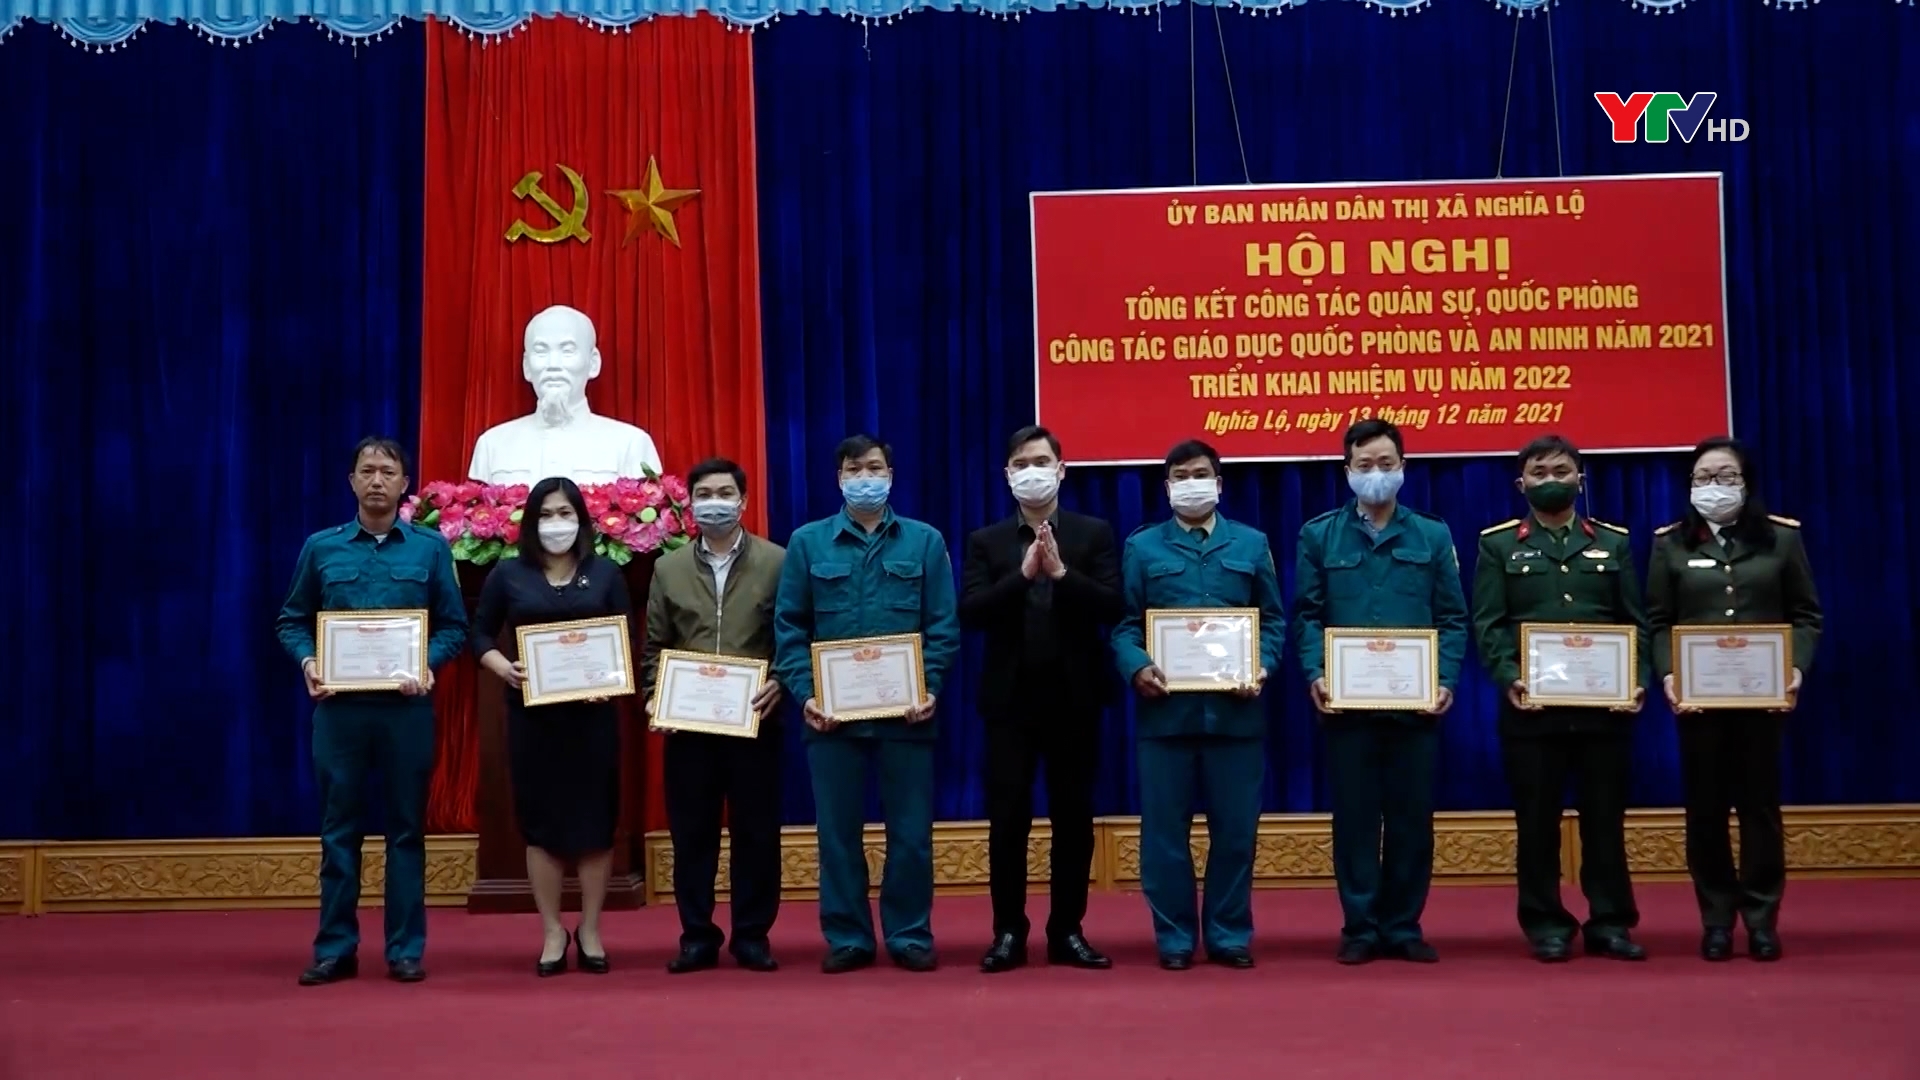 Thị xã Nghĩa Lộ và huyện Lục Yên triển khai nhiệm vụ quân sự, quốc phòng năm 2022